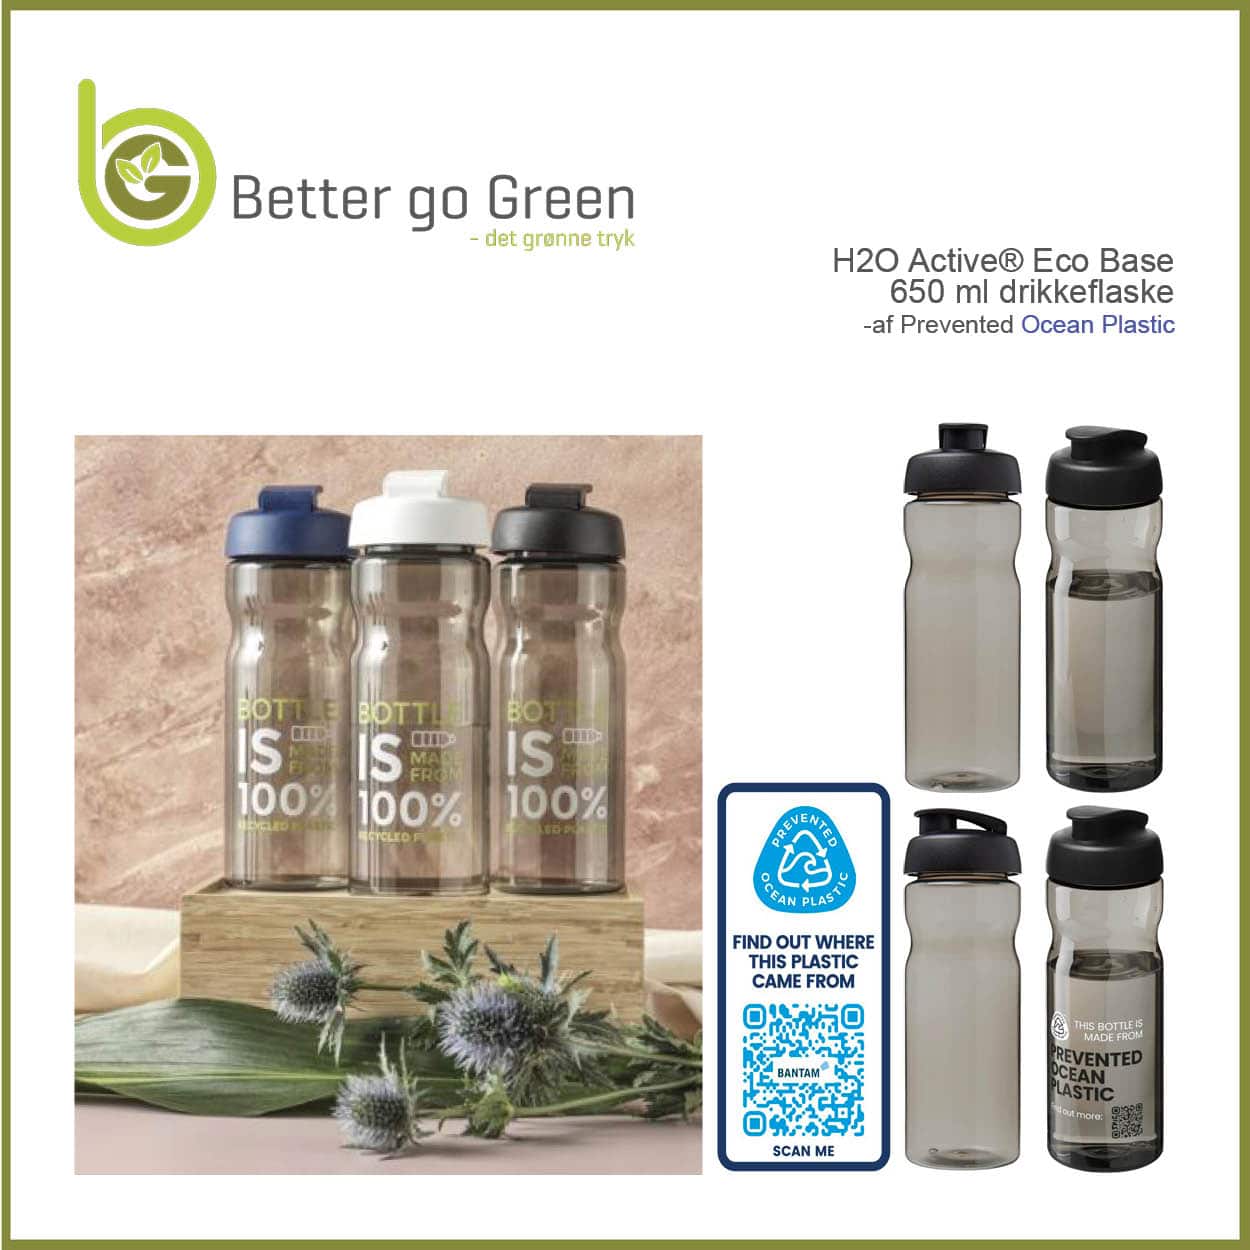 Drikkeflasker af genanvendt OCEAN plastik. BetterGoGreen.dk